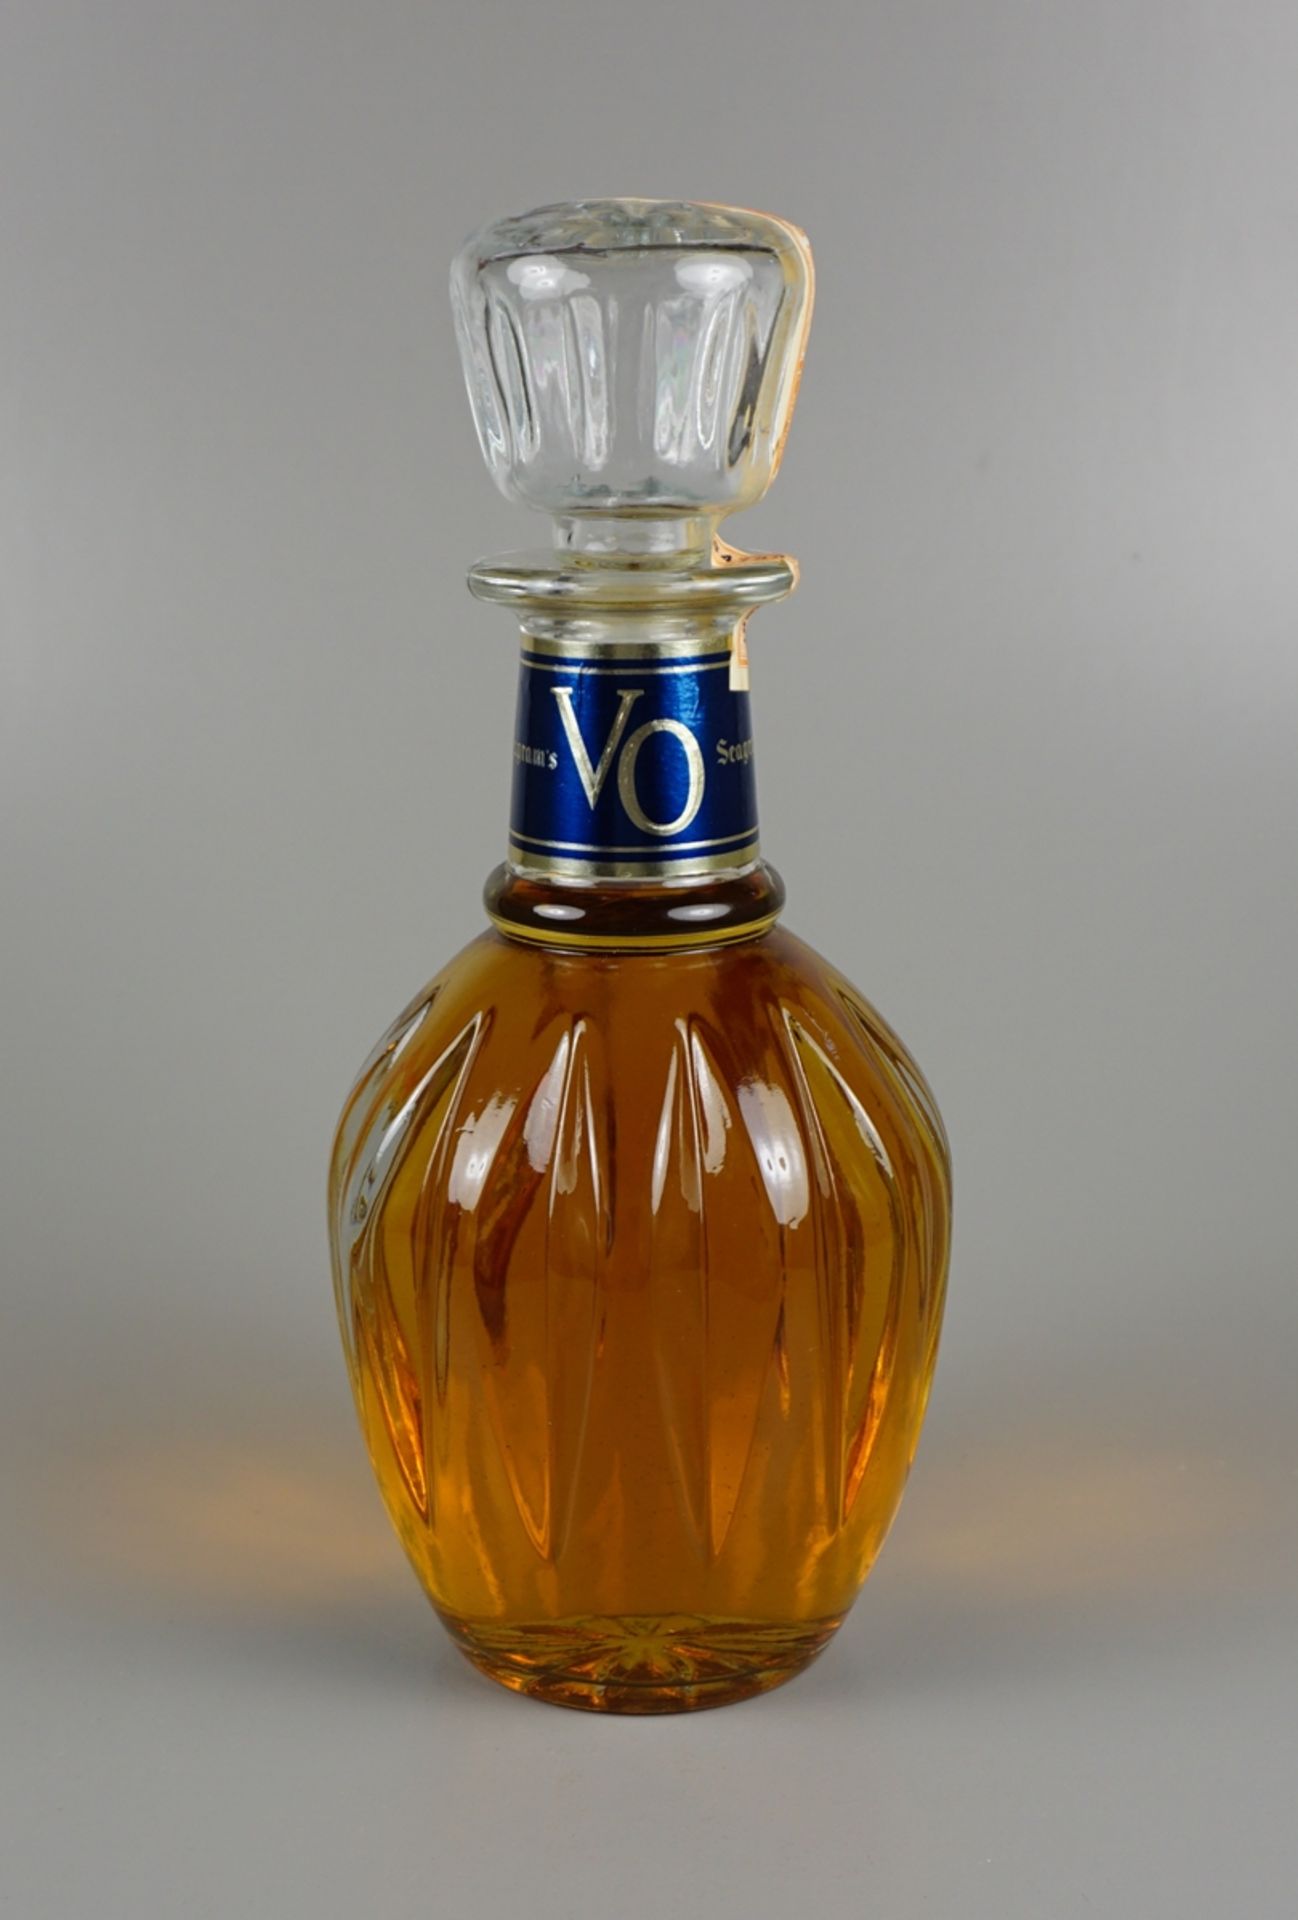 Seagram's V.O., Candian Whisky, 1981